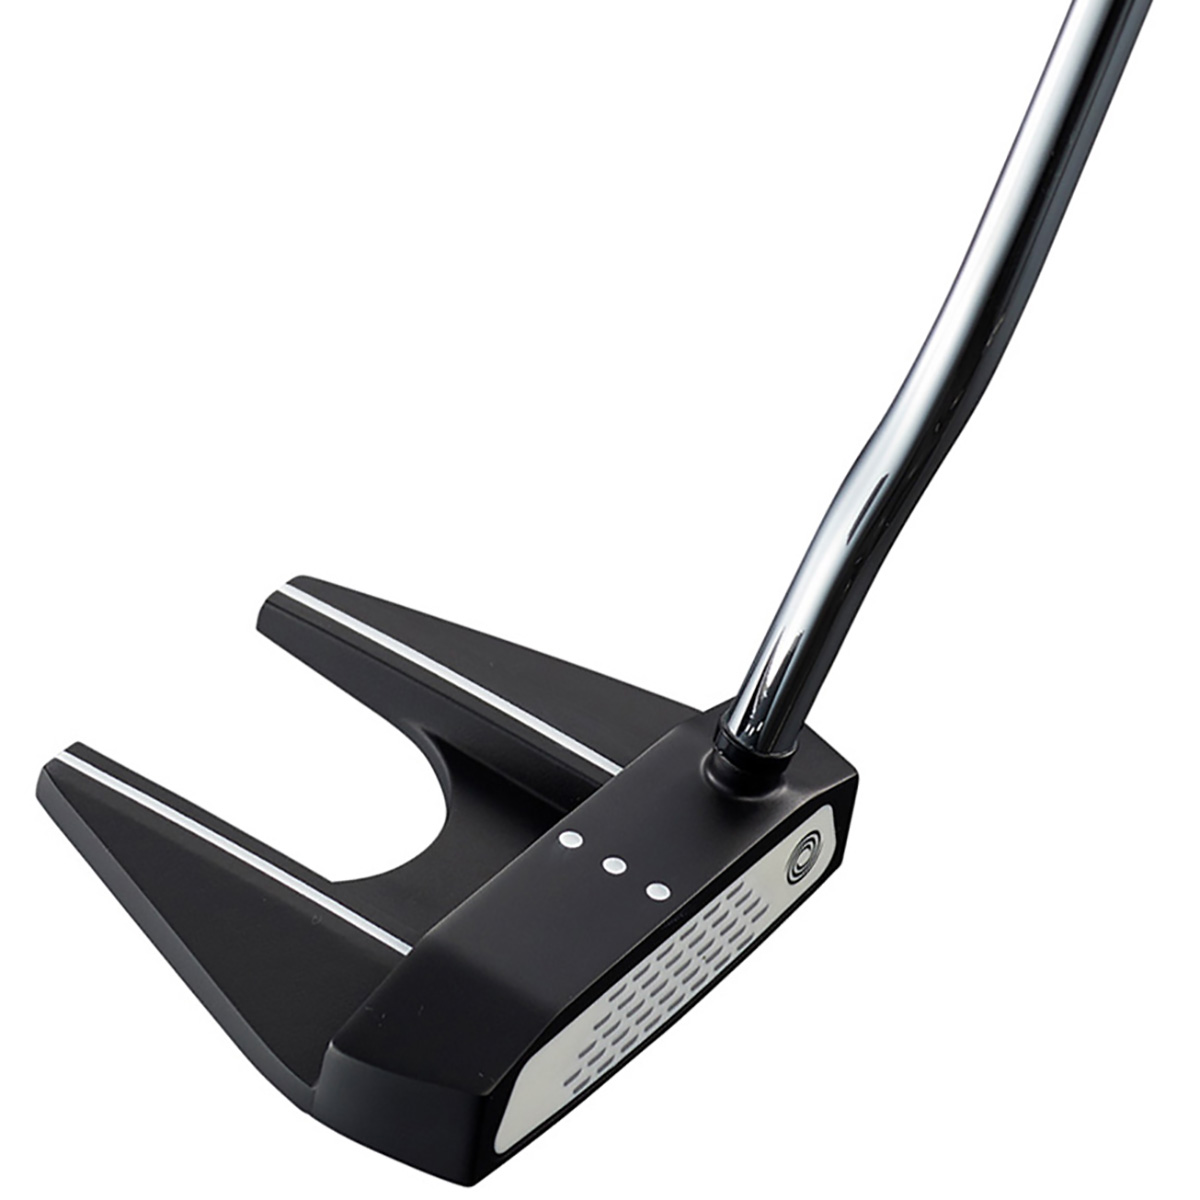 ゴルフ 超美品 ブラック アームロック パター XPUk9-m70575916487 オデッセイ ストロークラボ ビッグセブン をこねるこ